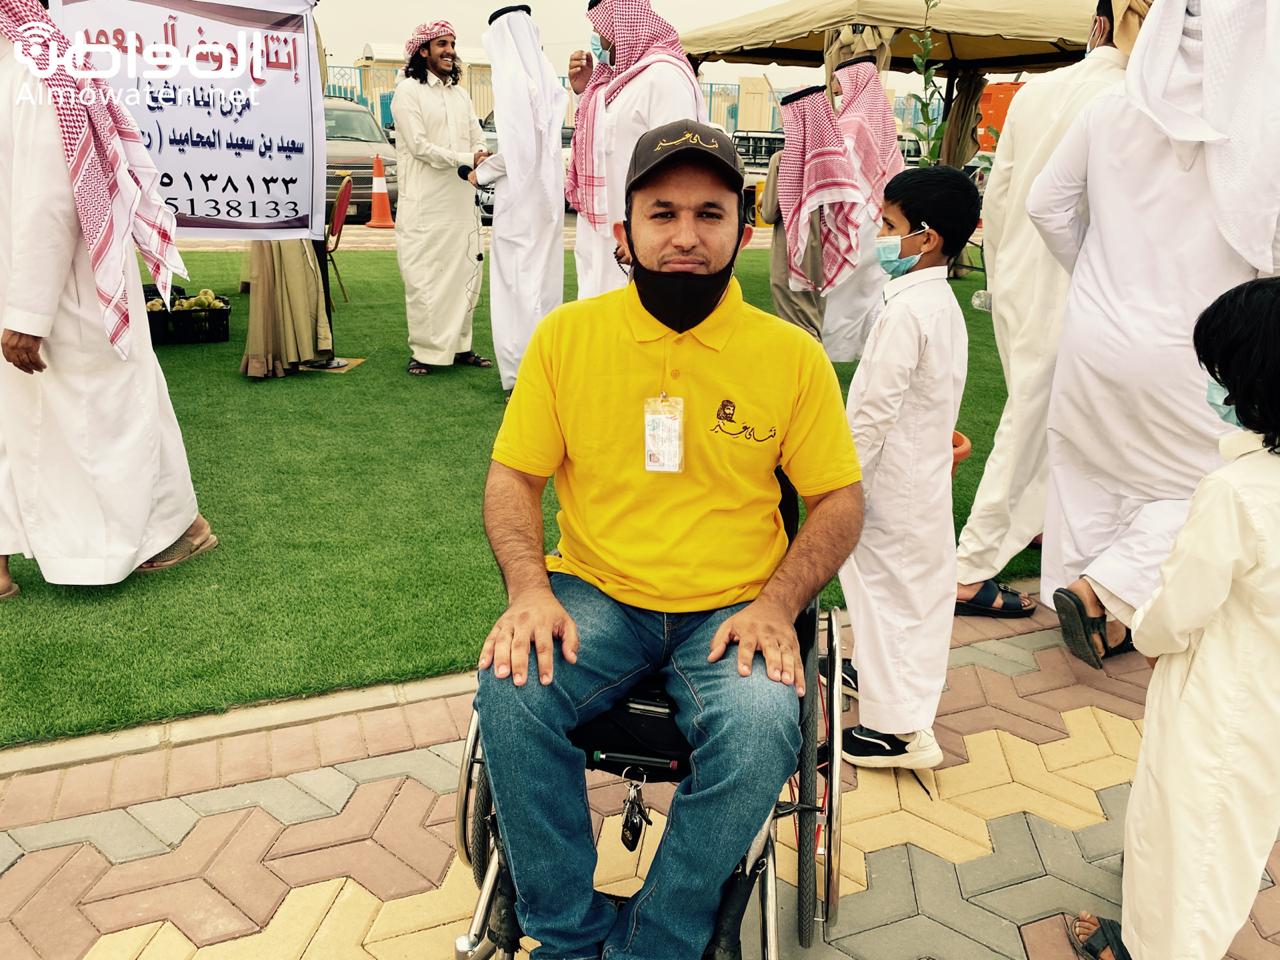 شاهد.. شاب يشارك في مهرجان الرمان رغم إعاقته بسراة عبيدة